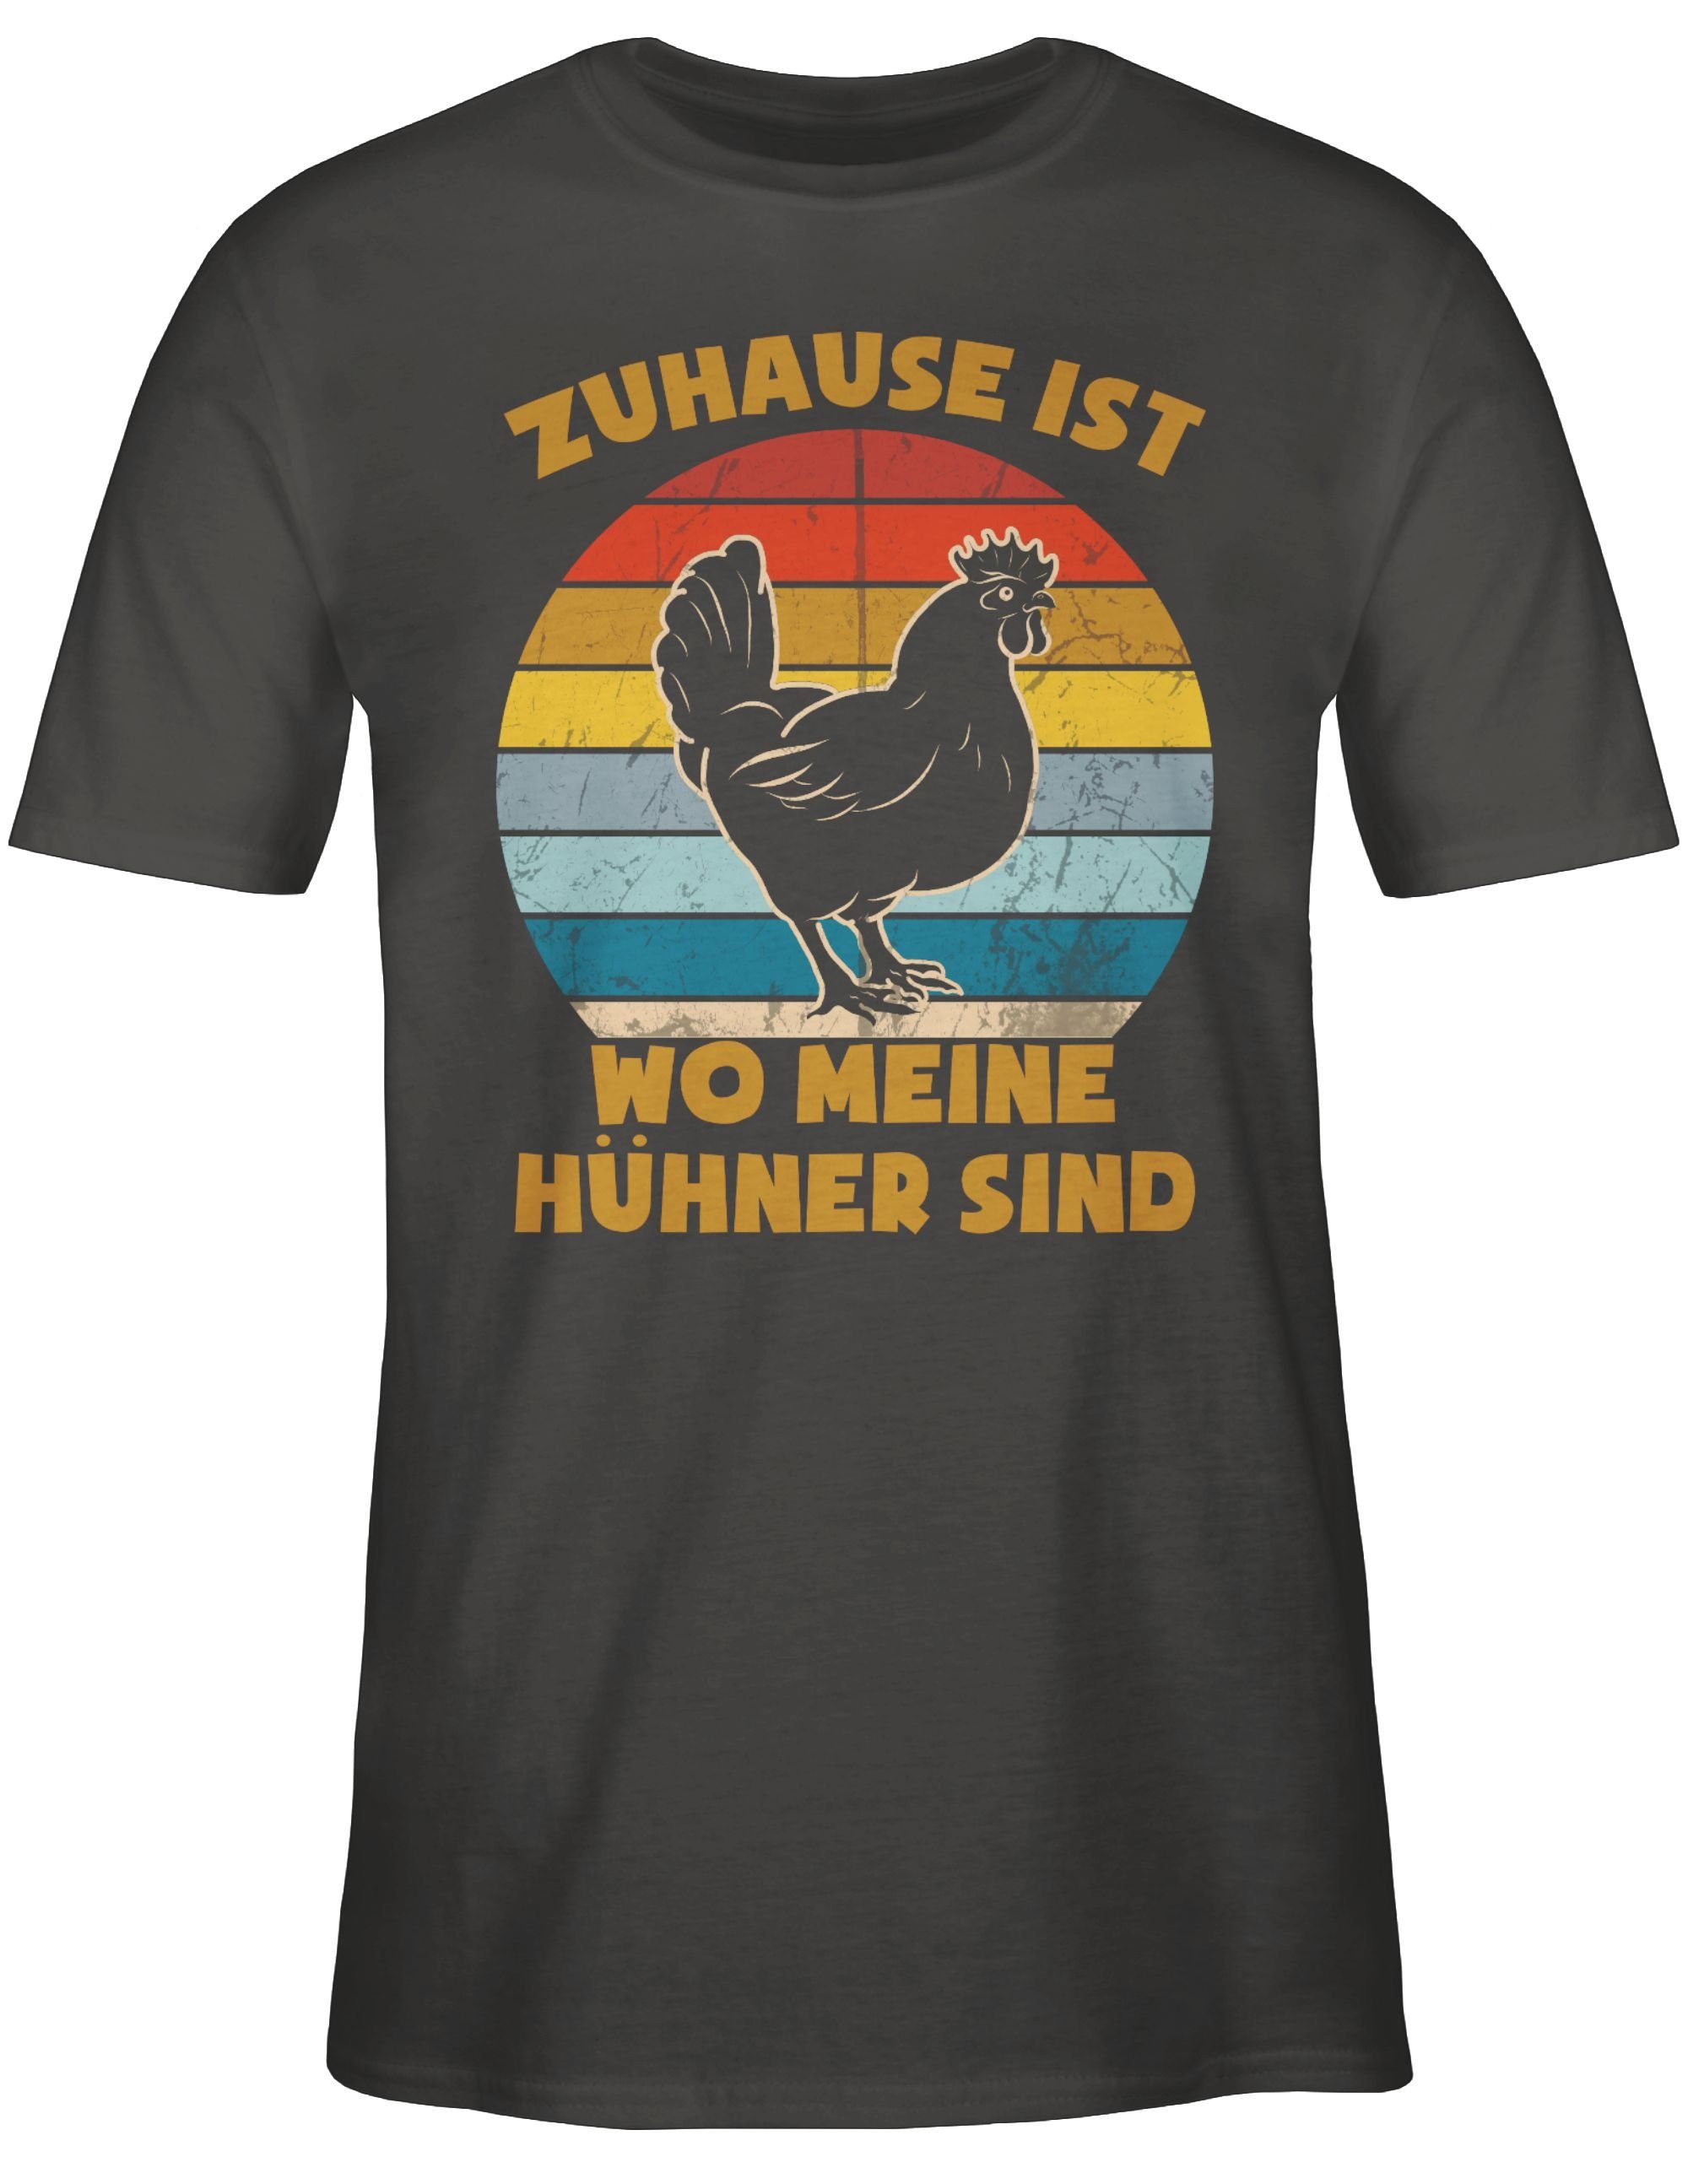 T-Shirt ist 02 Vintage Sprüche mit Zuhause wo Dunkelgrau - meine Hühner sind Statement Shirtracer Spruch